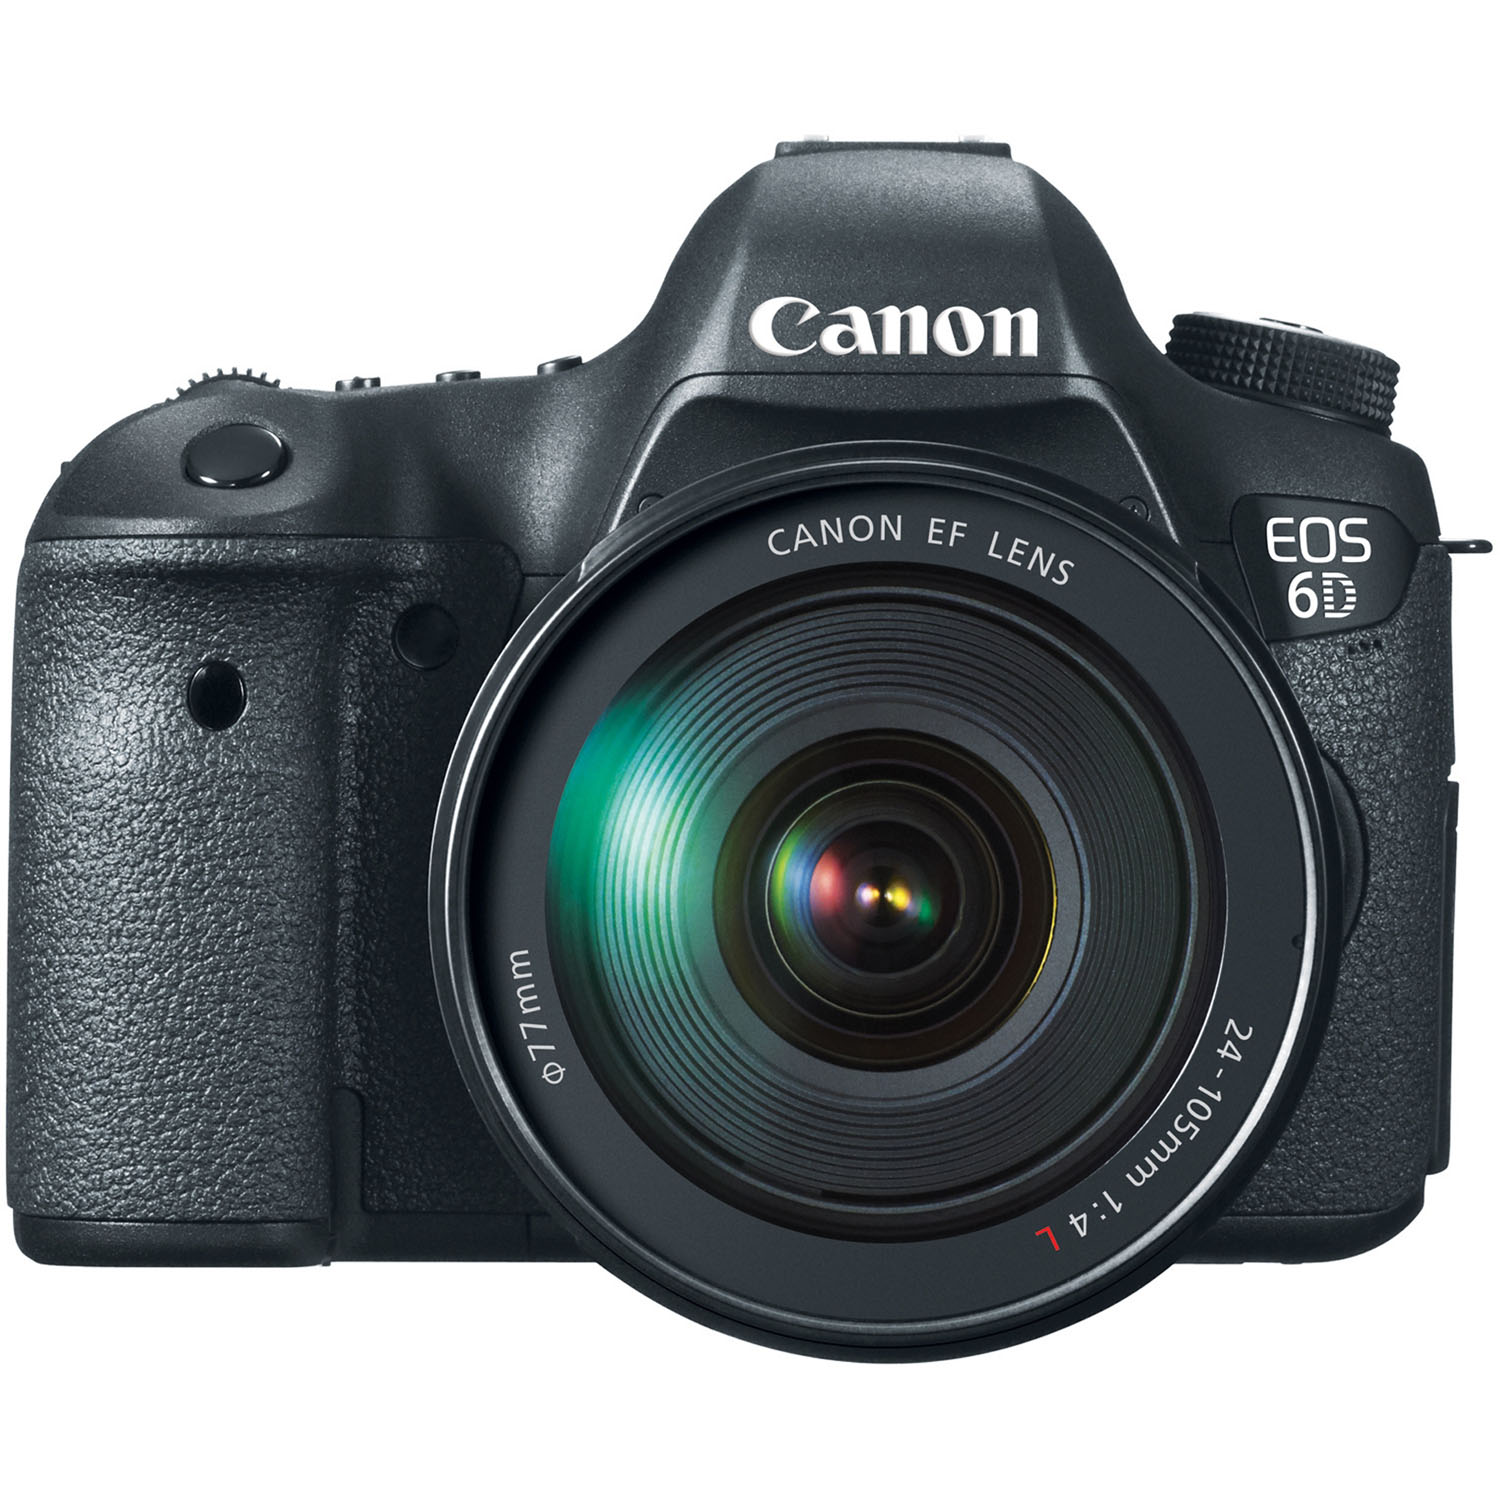 EOS 6D 20.2MP Digital SLR Camera with EF 24-105mm f/4L IS USM Standard Zoom Lens